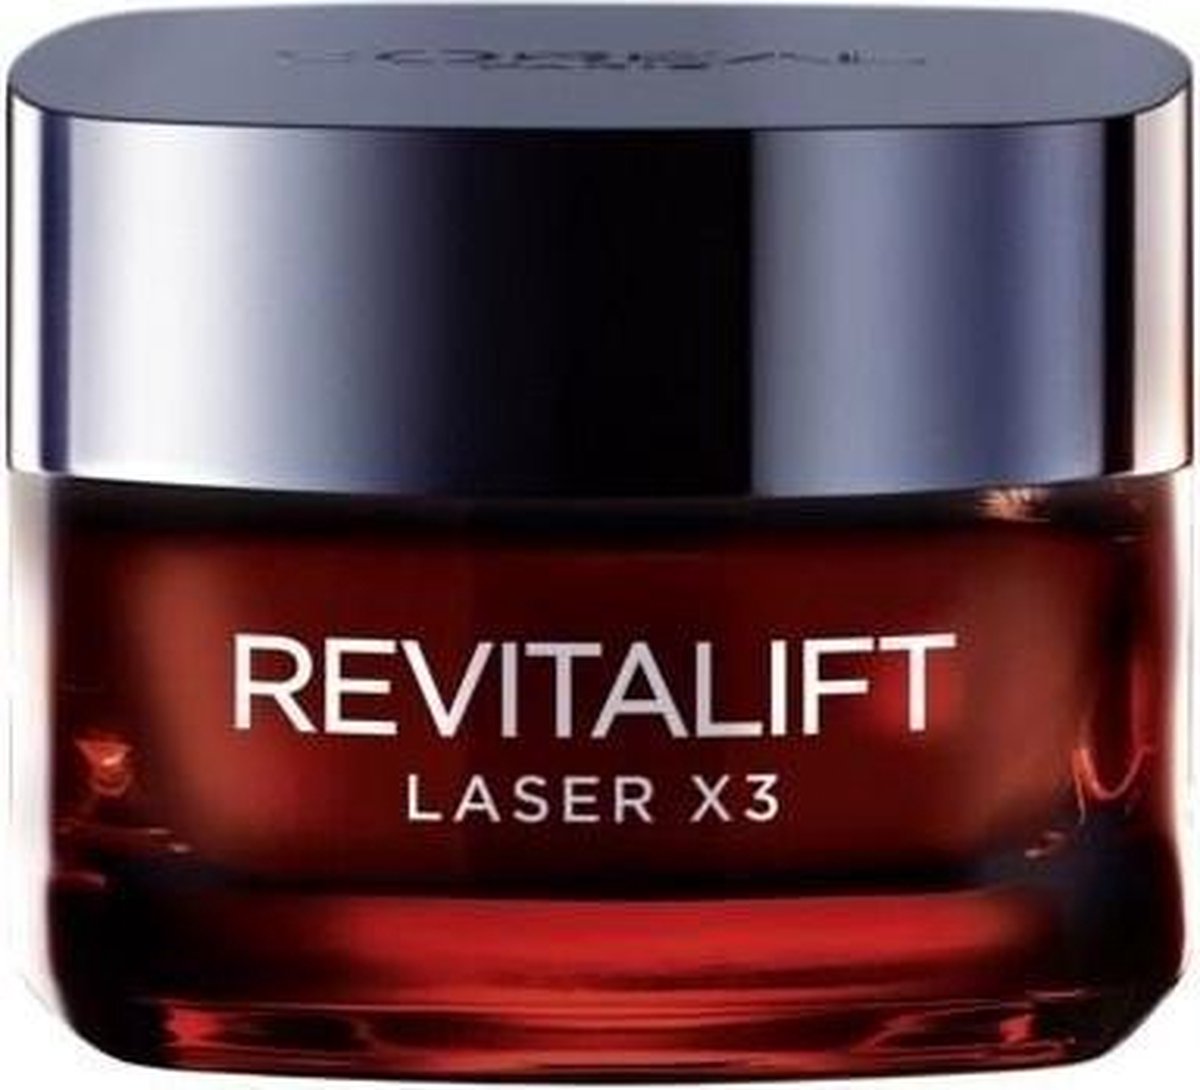 L’Oréal Paris Revitalift Laser X3 Anti-Aging Crème